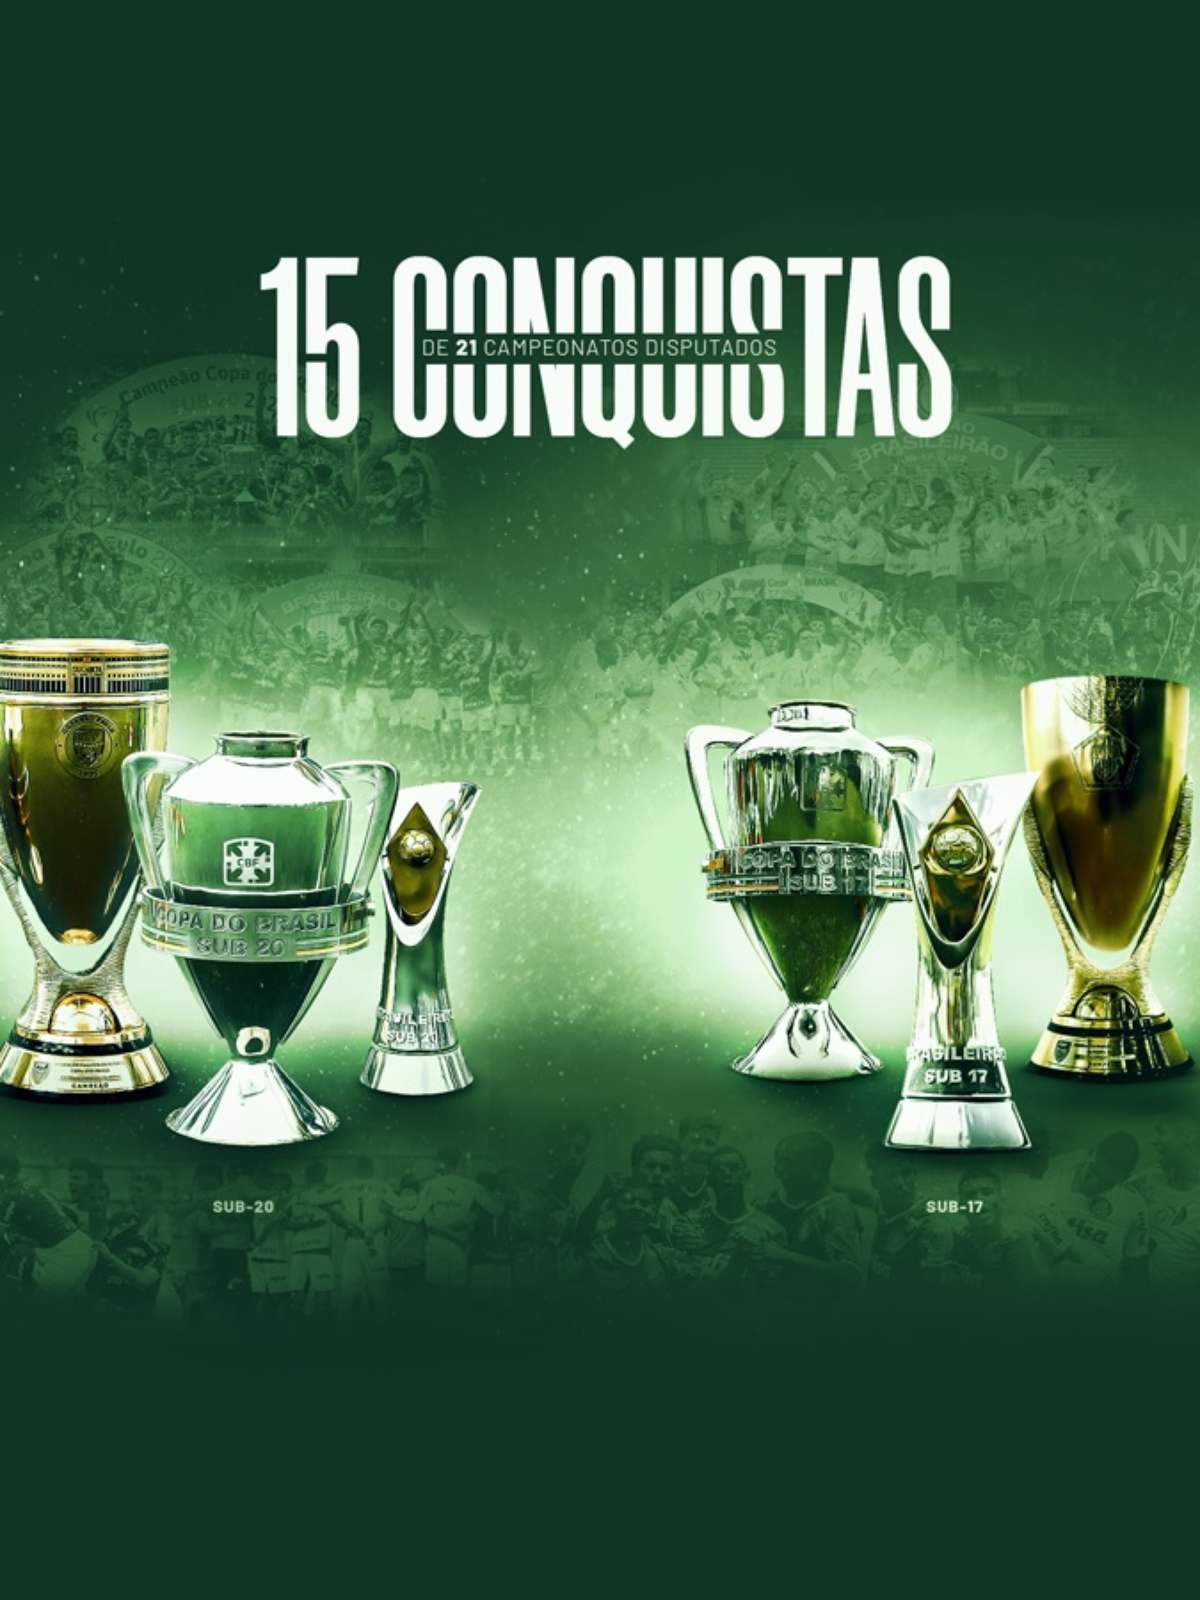 Quatro vitórias para o título: Palmeiras faz contas pelo bi brasileiro;  simule os jogos finais, palmeiras